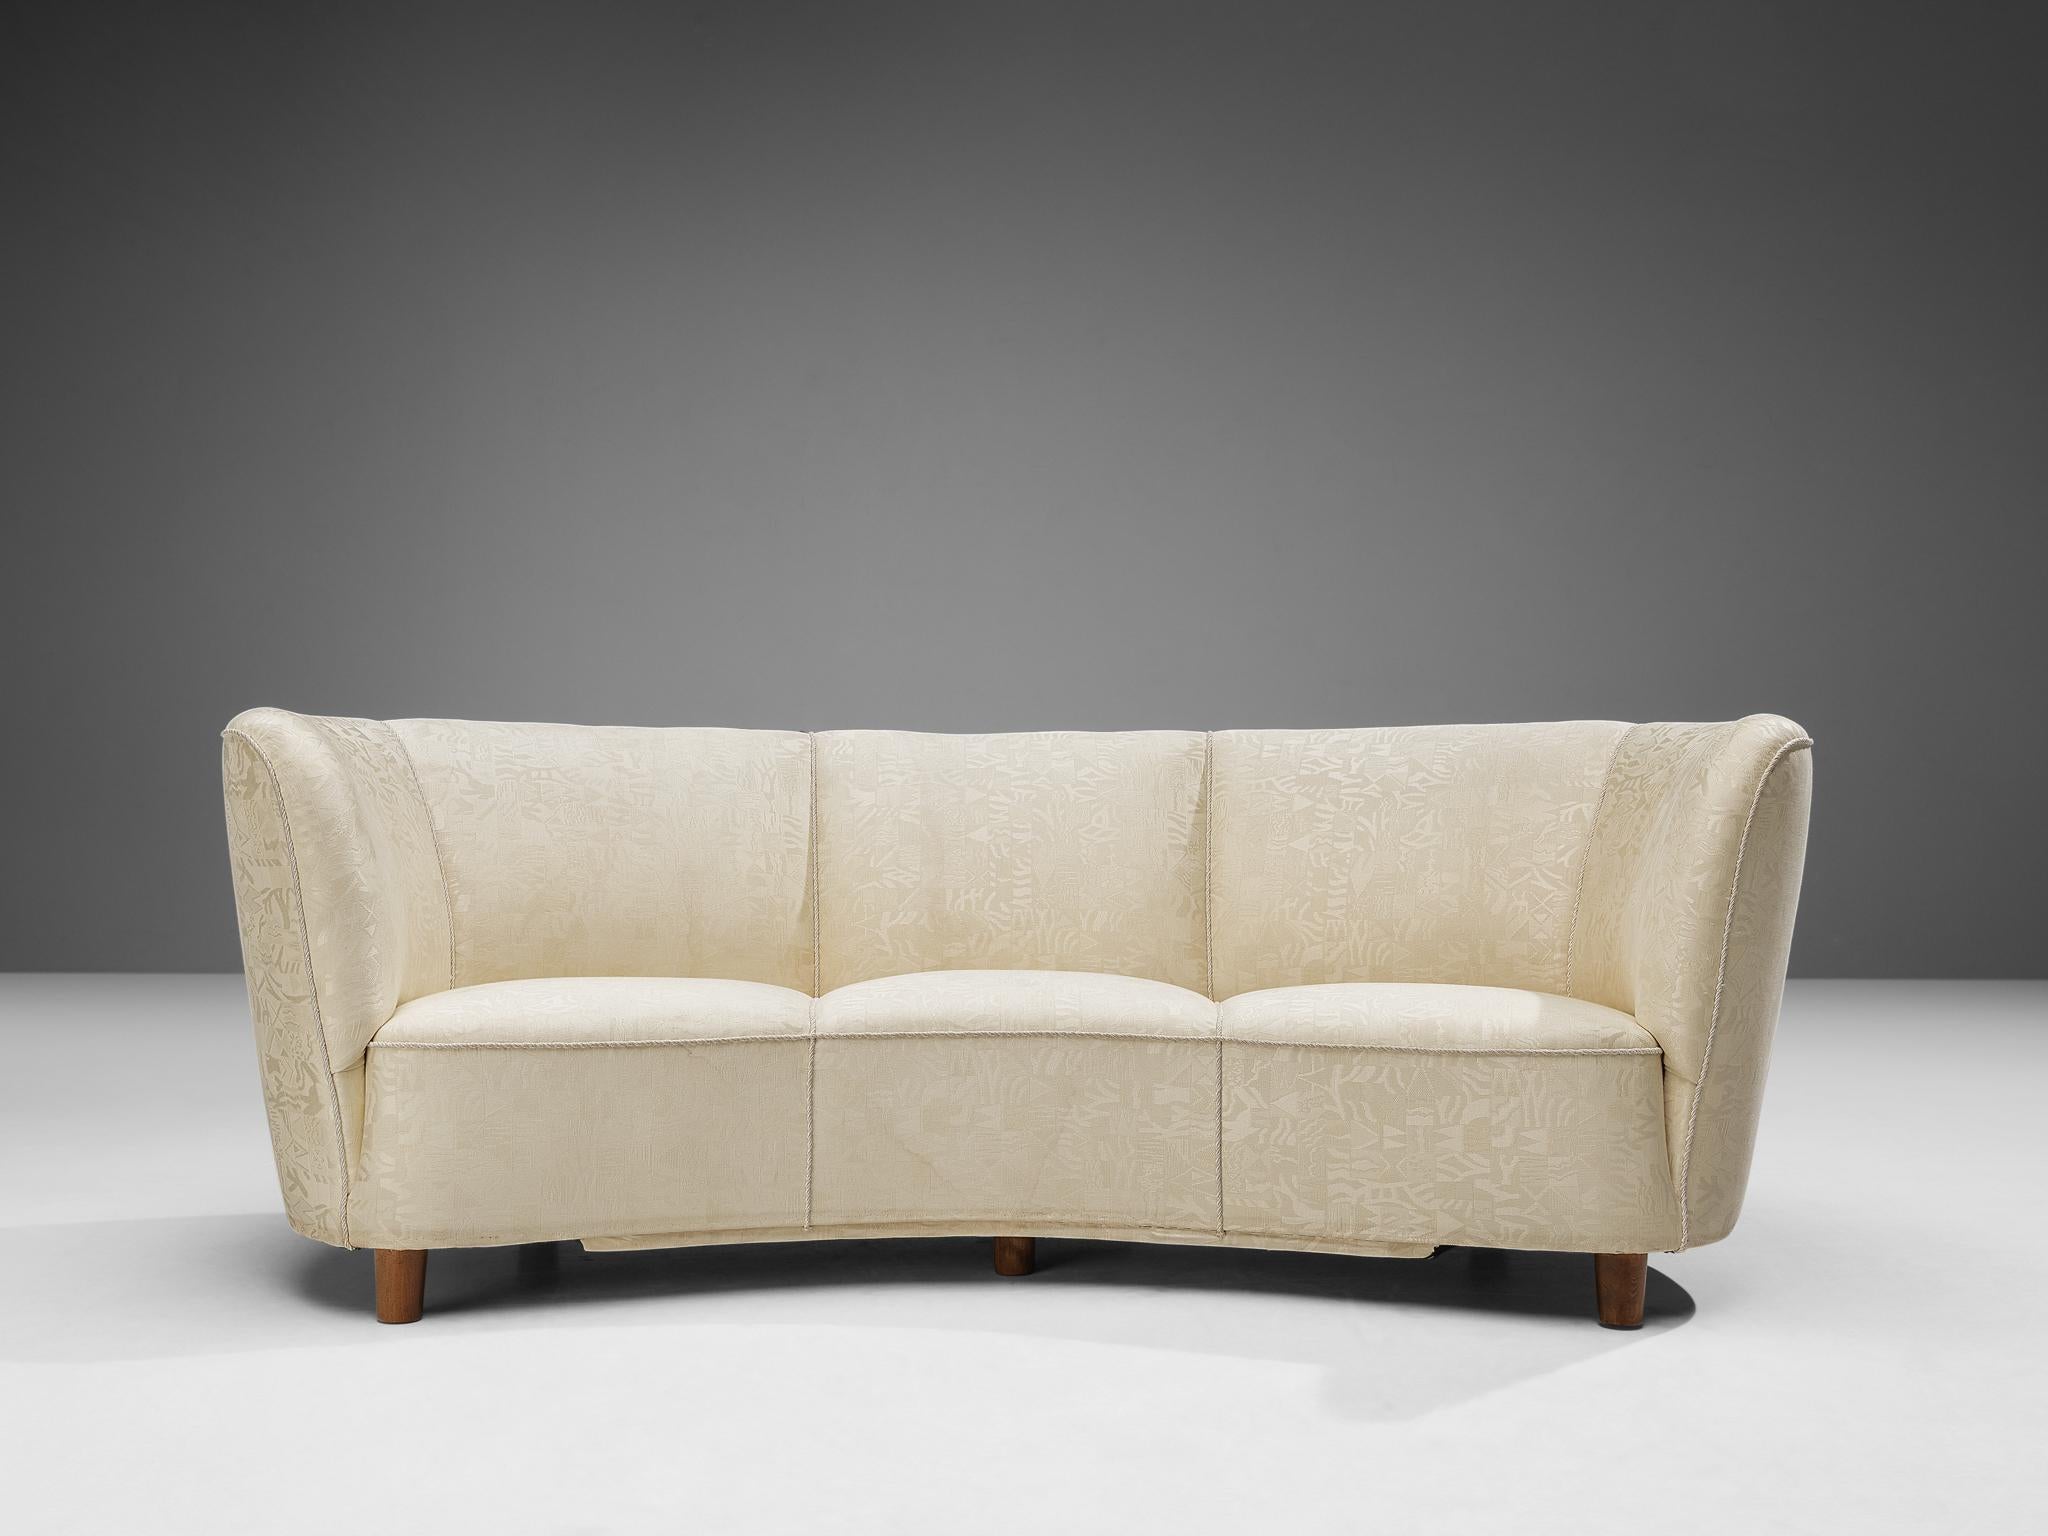 Canapé Banana, revêtement blanc cassé, pieds en bois, Danemark, années 1940.

Ce canapé voluptueux est réalisé dans un magnifique tissu blanc cassé avec un motif particulier. Le canapé est doté d'un dossier haut et incurvé, tandis que le dossier est